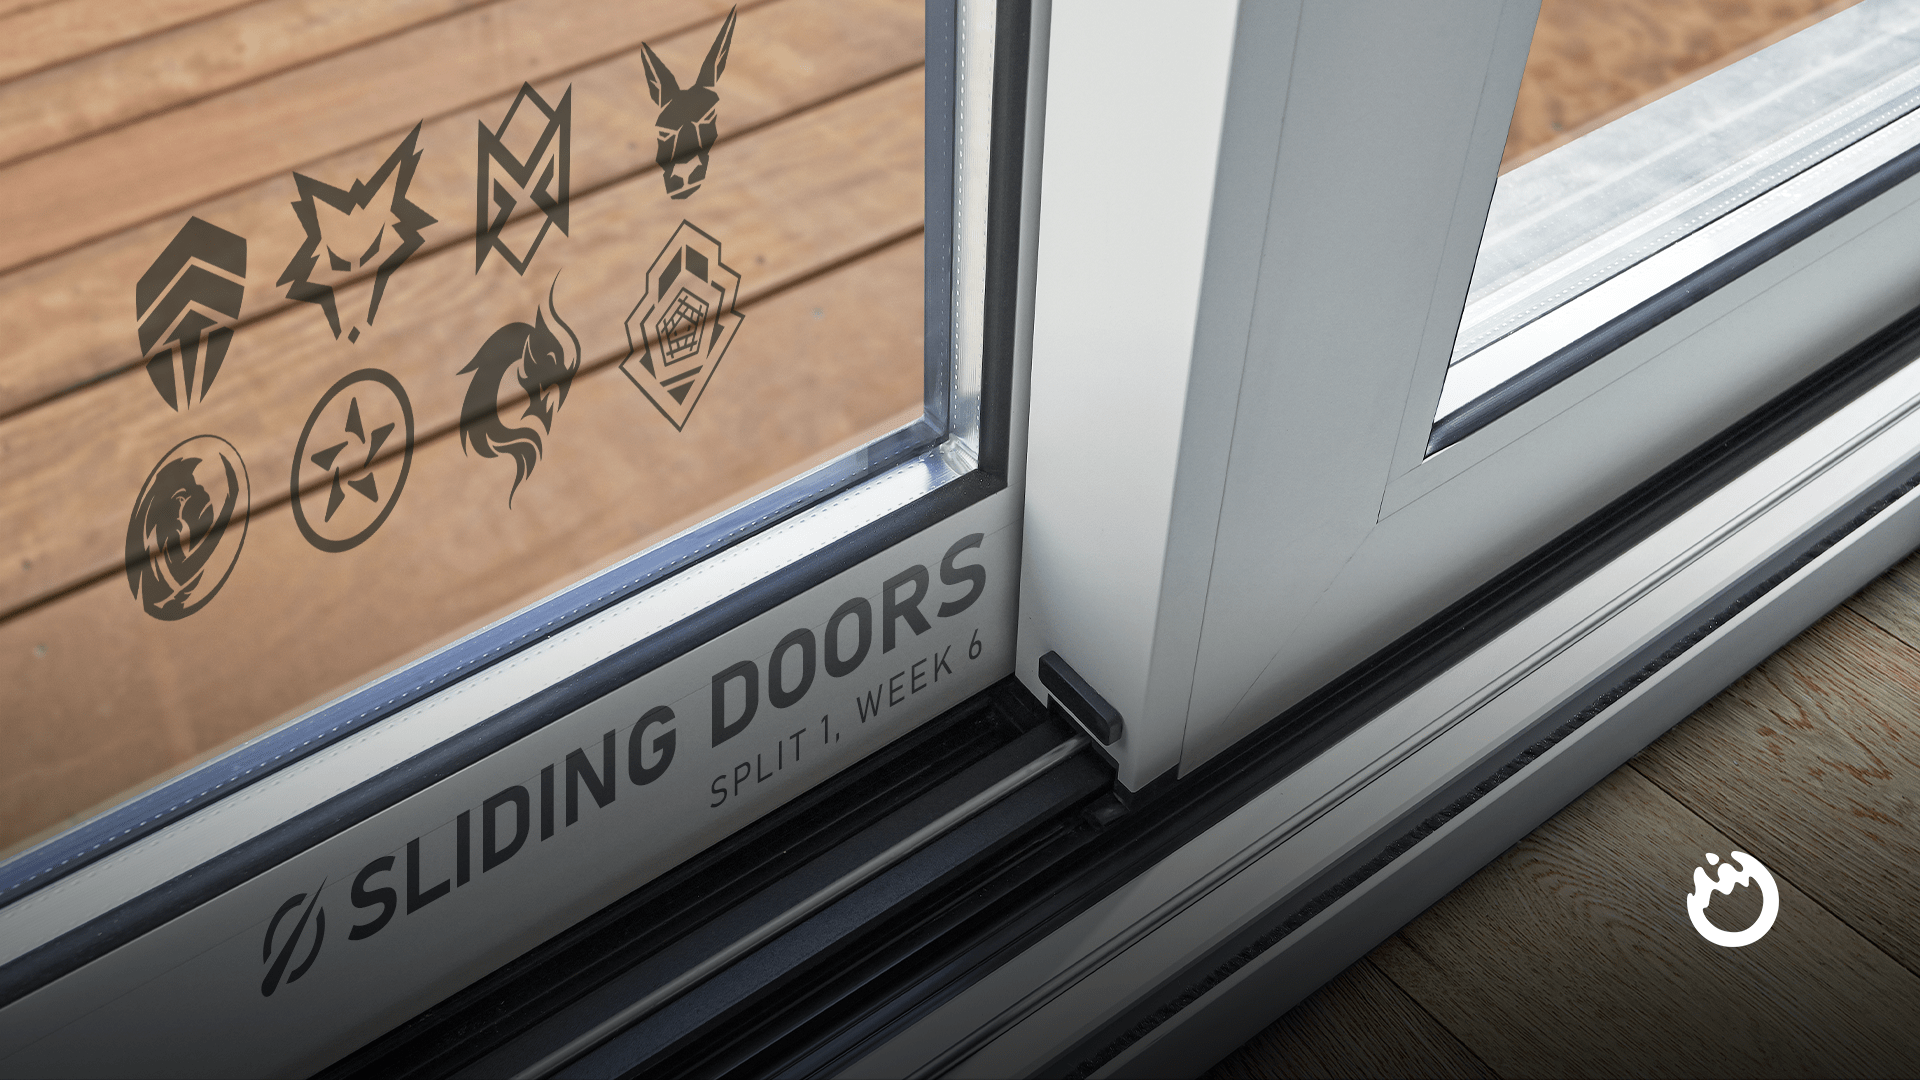 Sliding Doors: LCO 2022 Split 1, Week 6